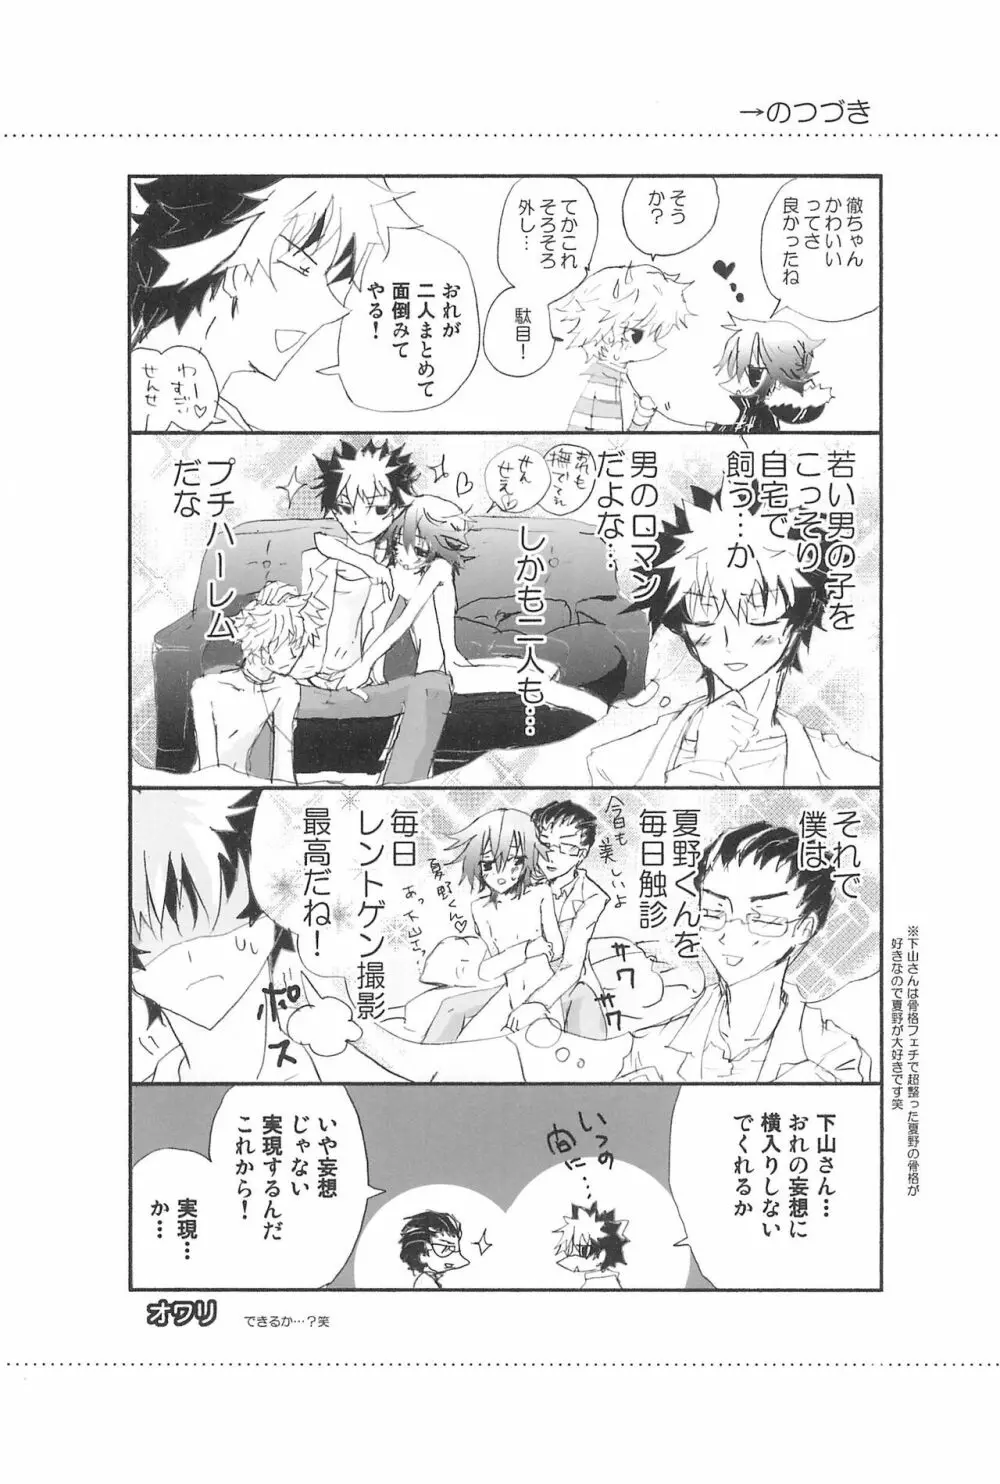 Shiki-hon 10 21ページ